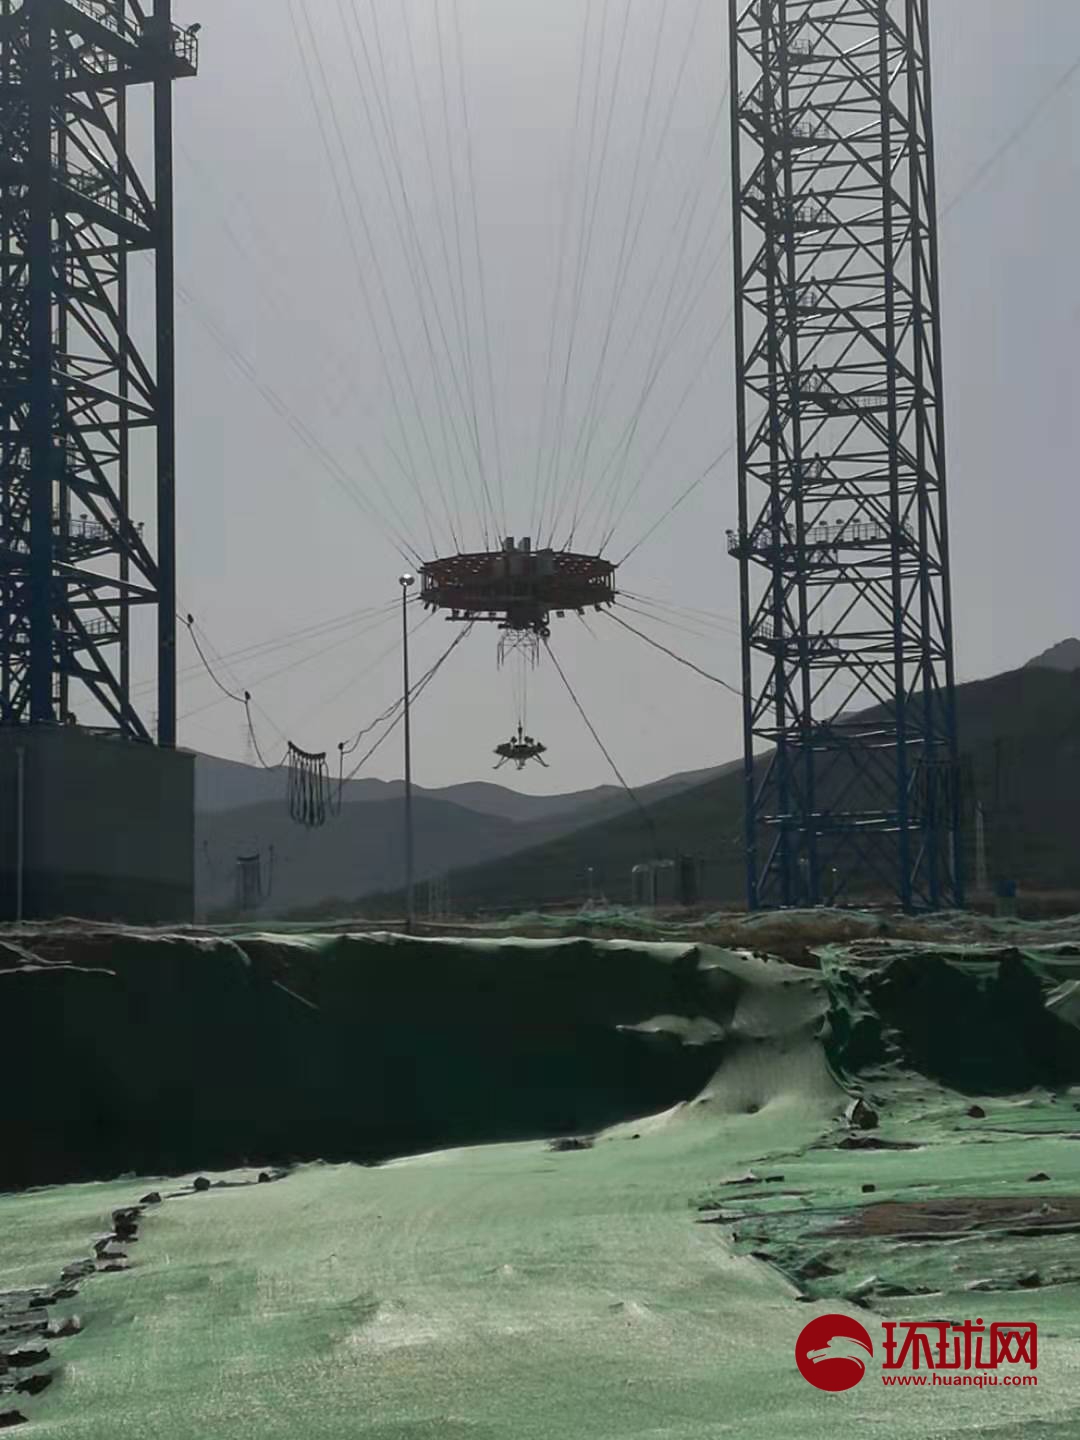 火星探测任务着陆器悬停避障试验结束后的状态 马俊/摄